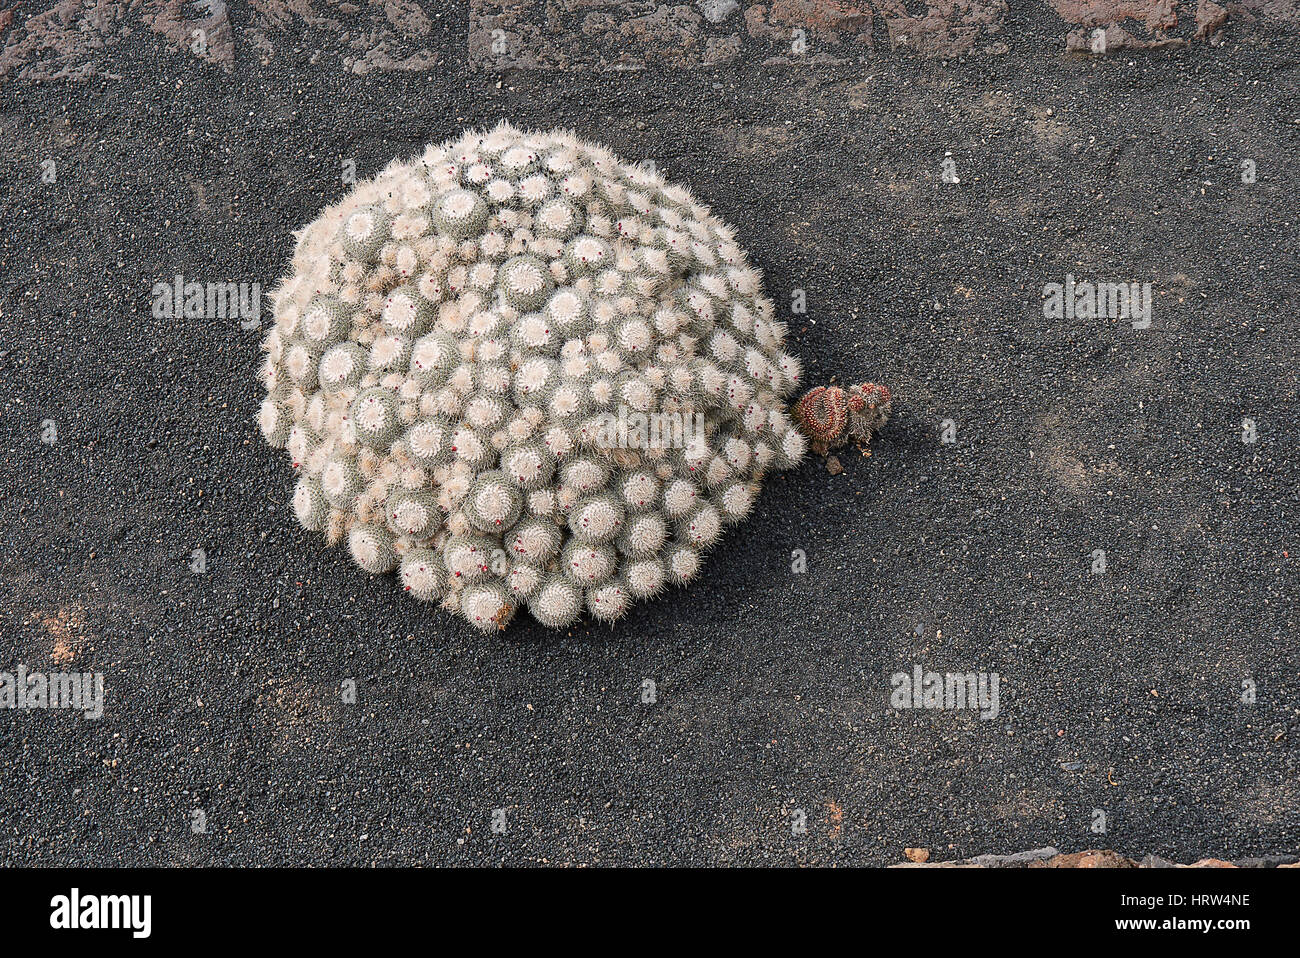 Mammillaria geminispina cluster Stock Photo